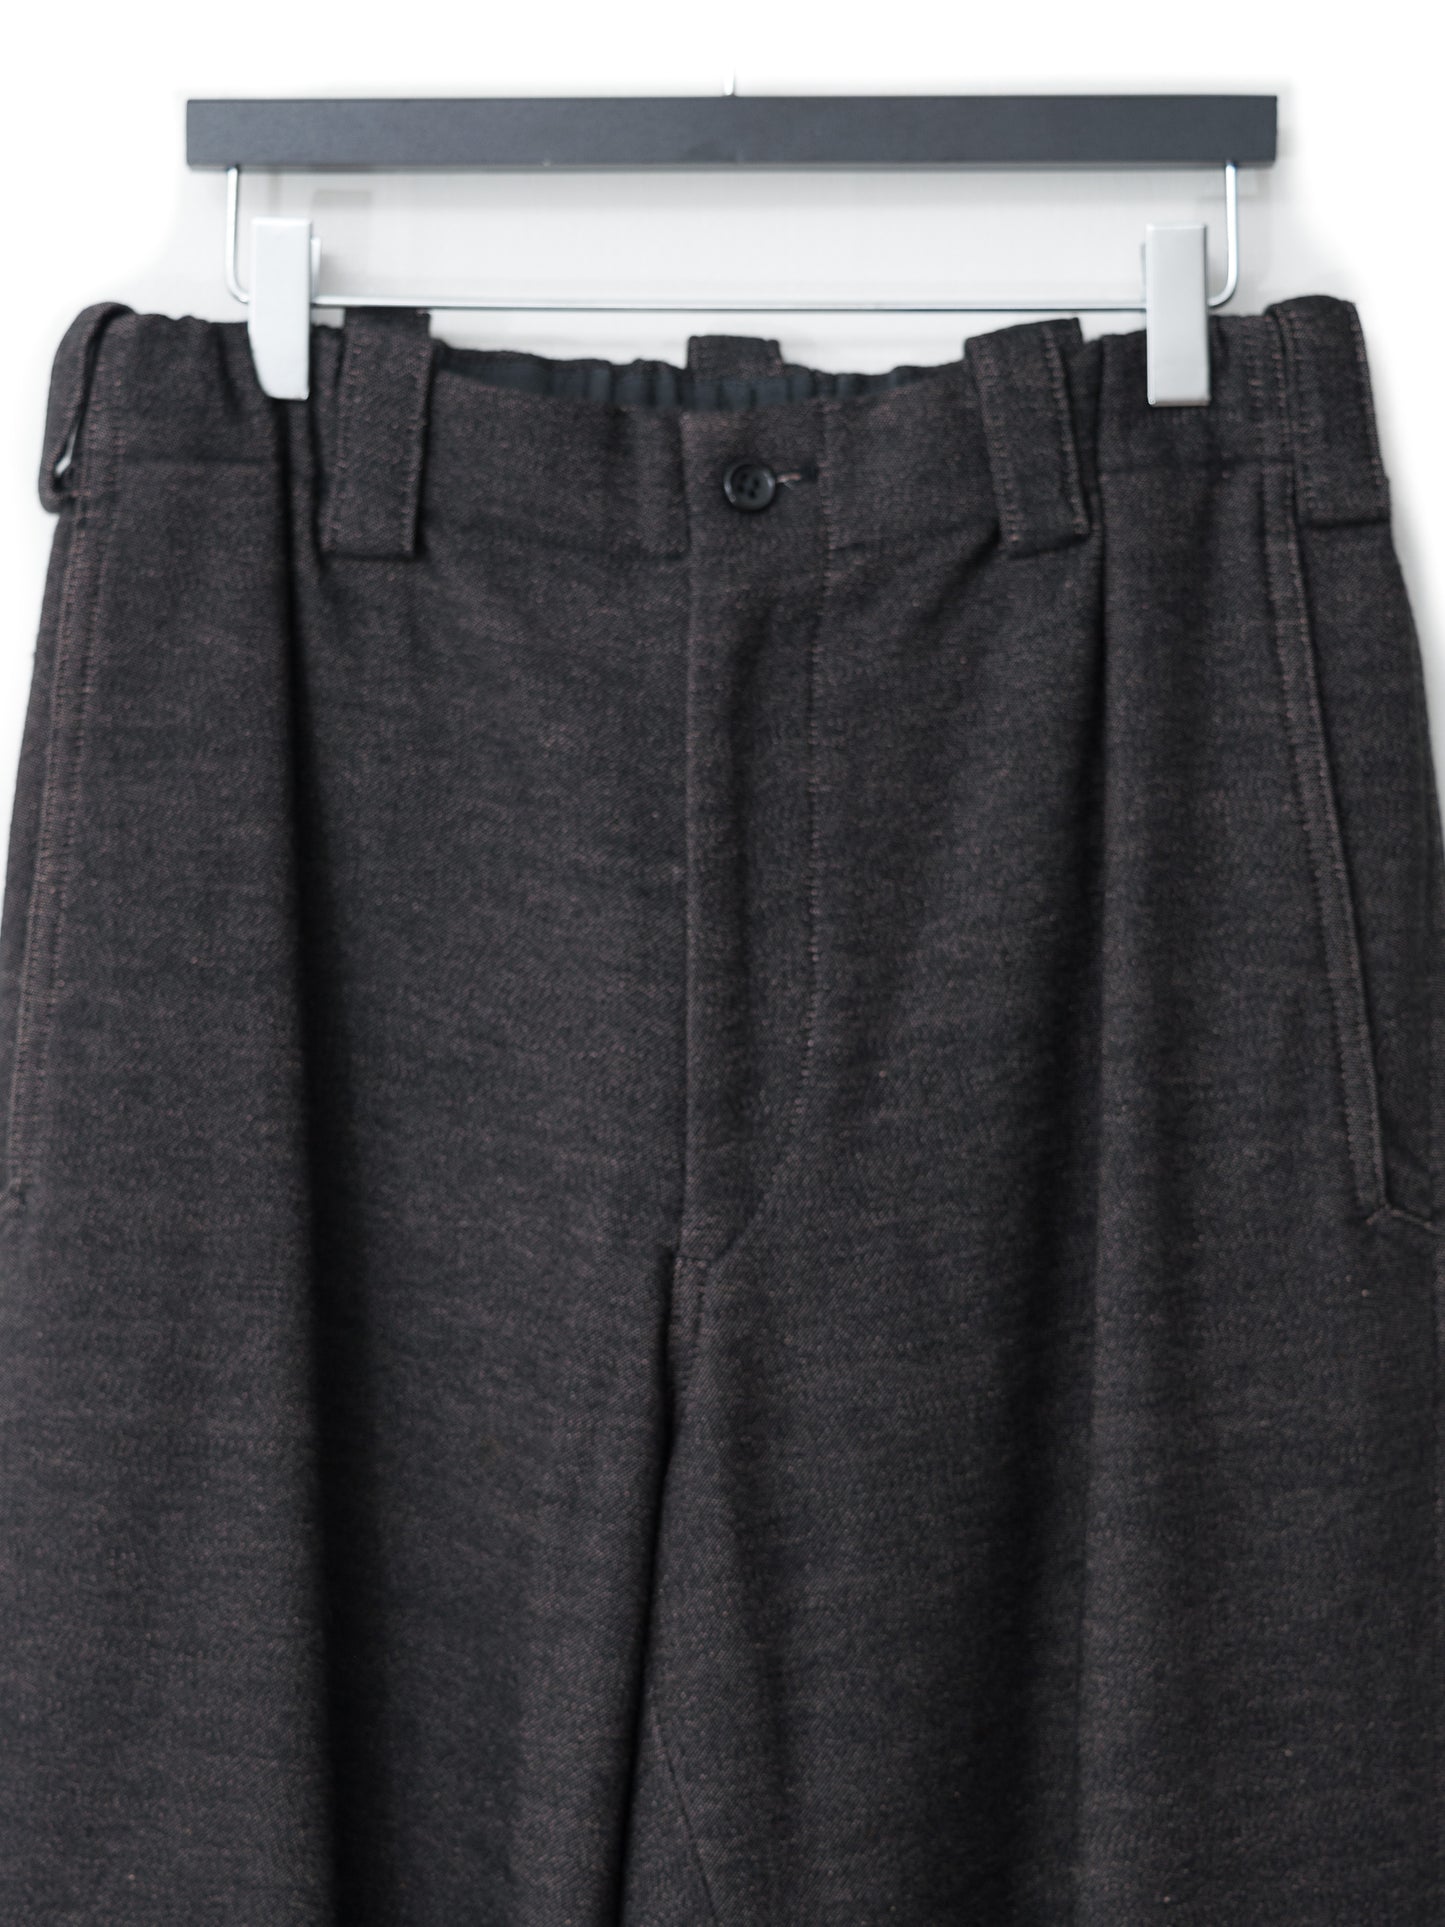 elastic waist pants rose brown ∙ wool ∙ medium